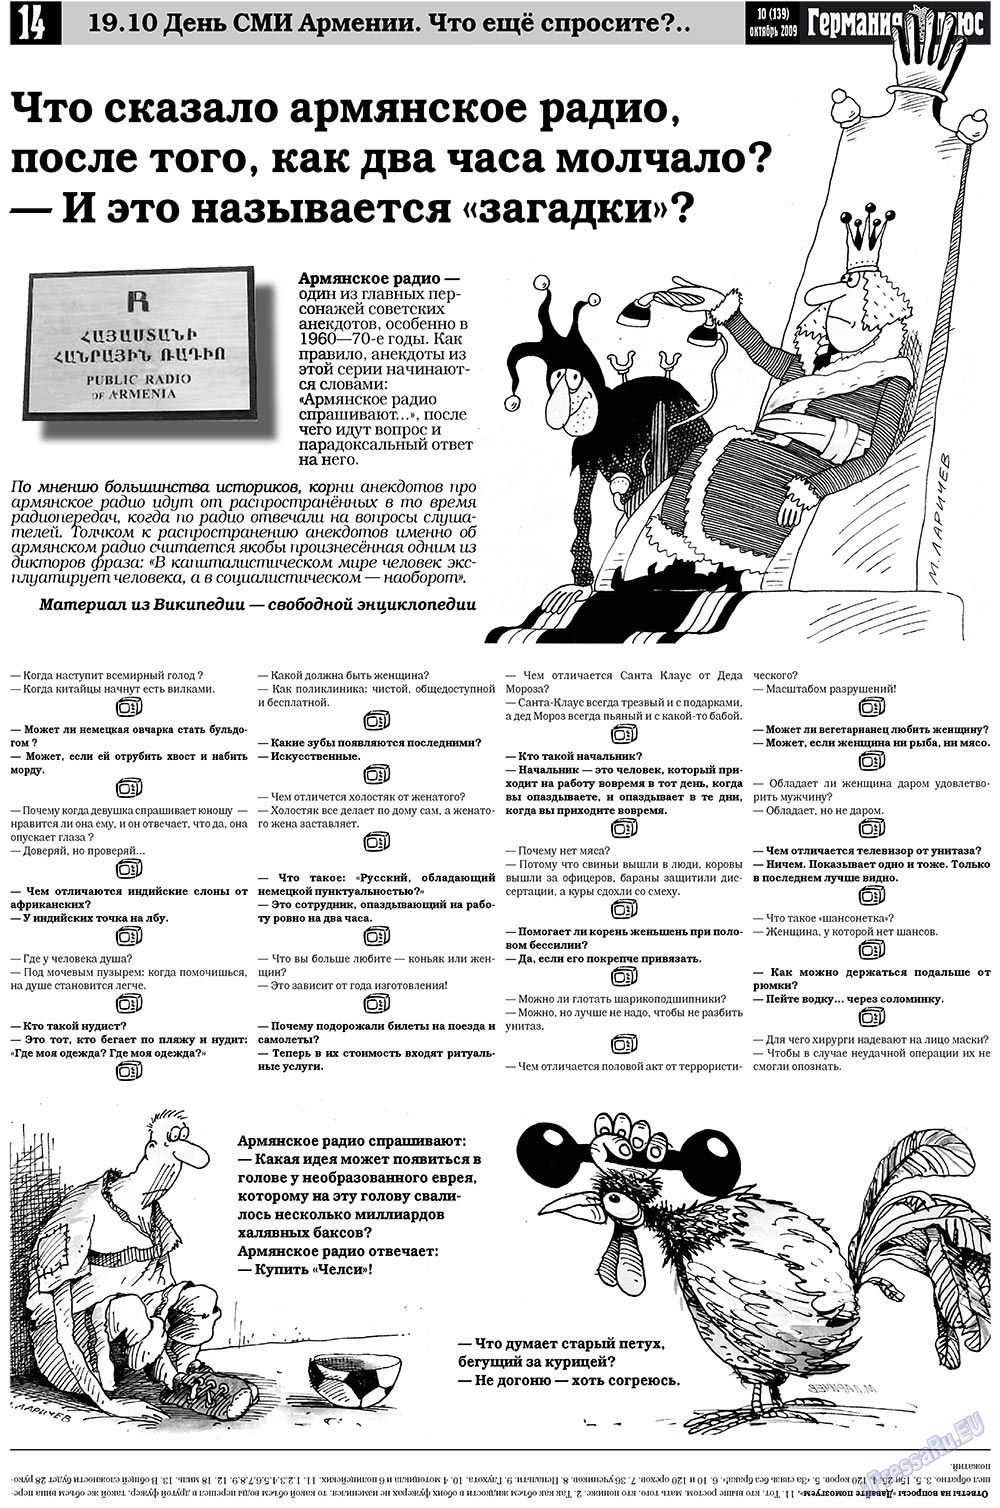 Германия плюс, газета. 2009 №10 стр.14